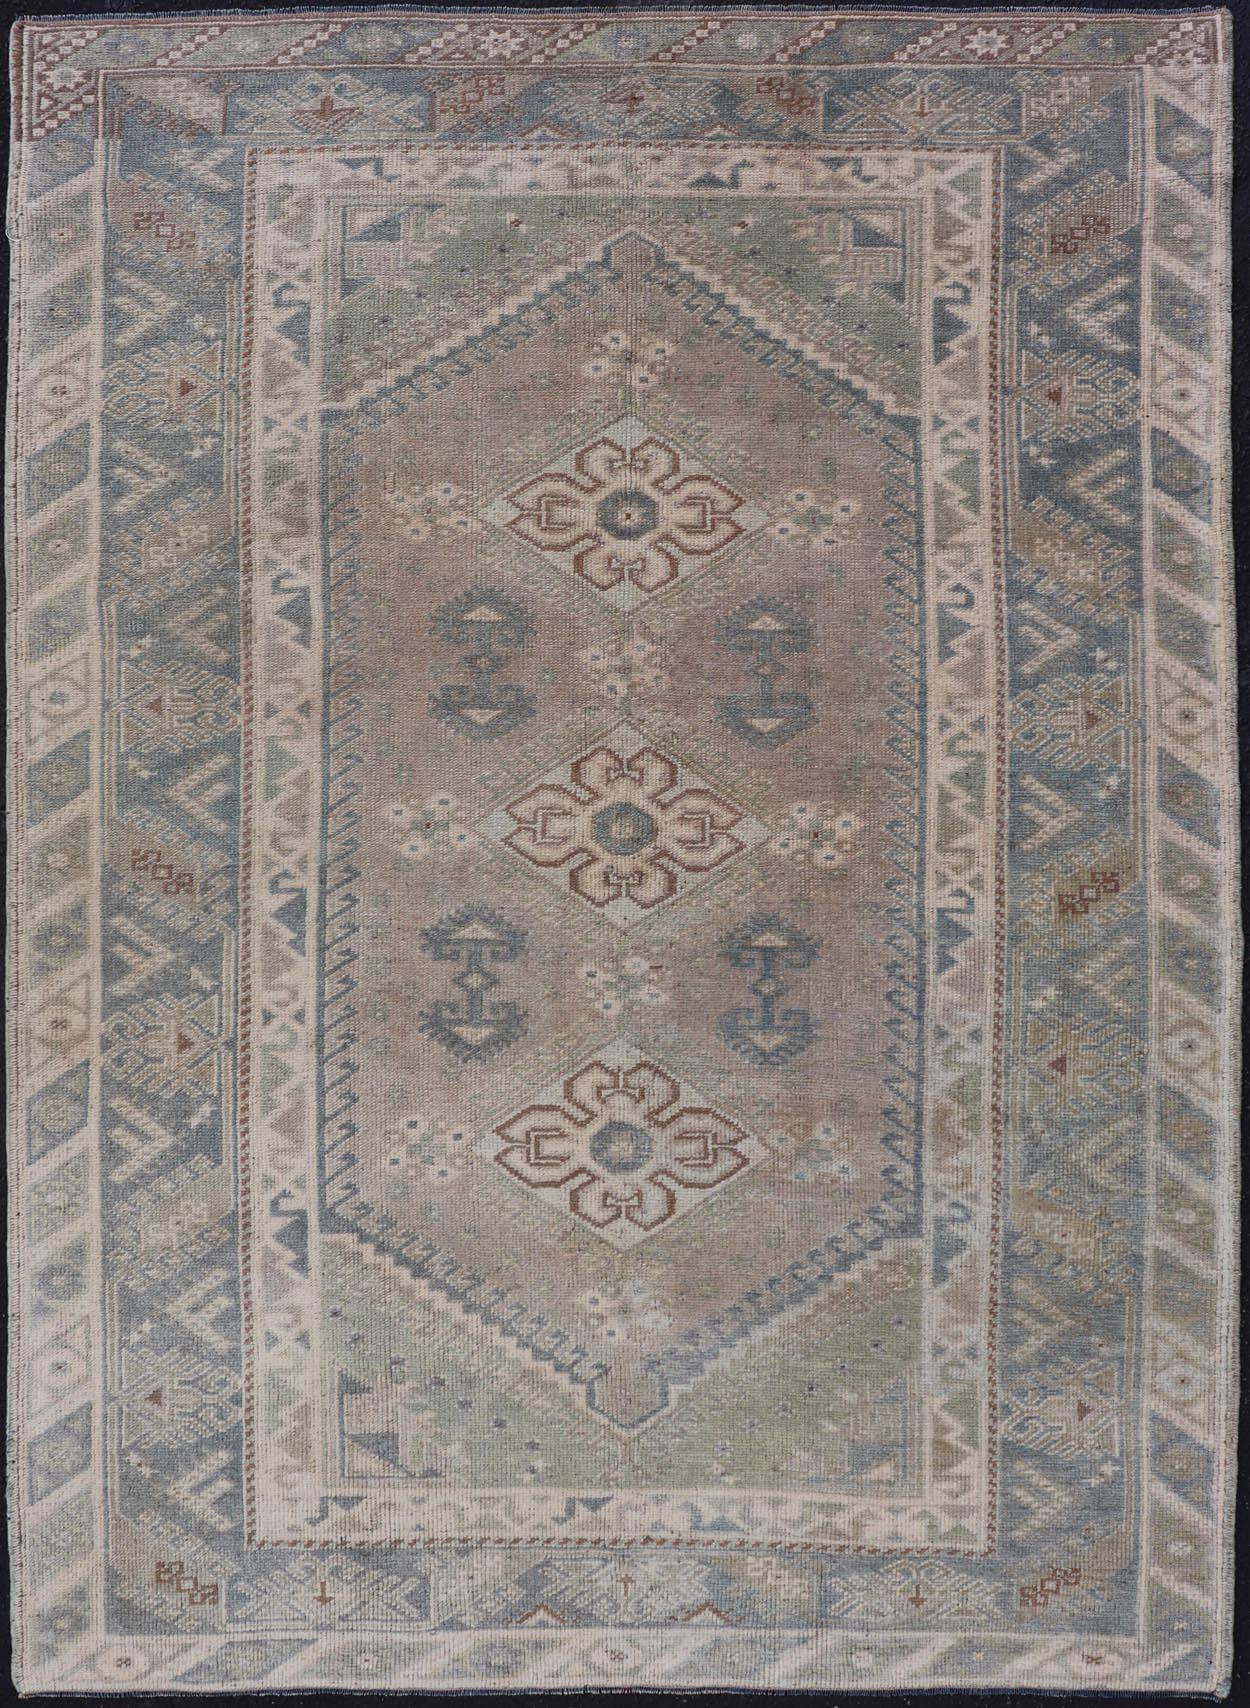 Türkischer Vintage-Teppich mit einzigartigem Design in Blau, Taupe, Butter und Neutraltönen